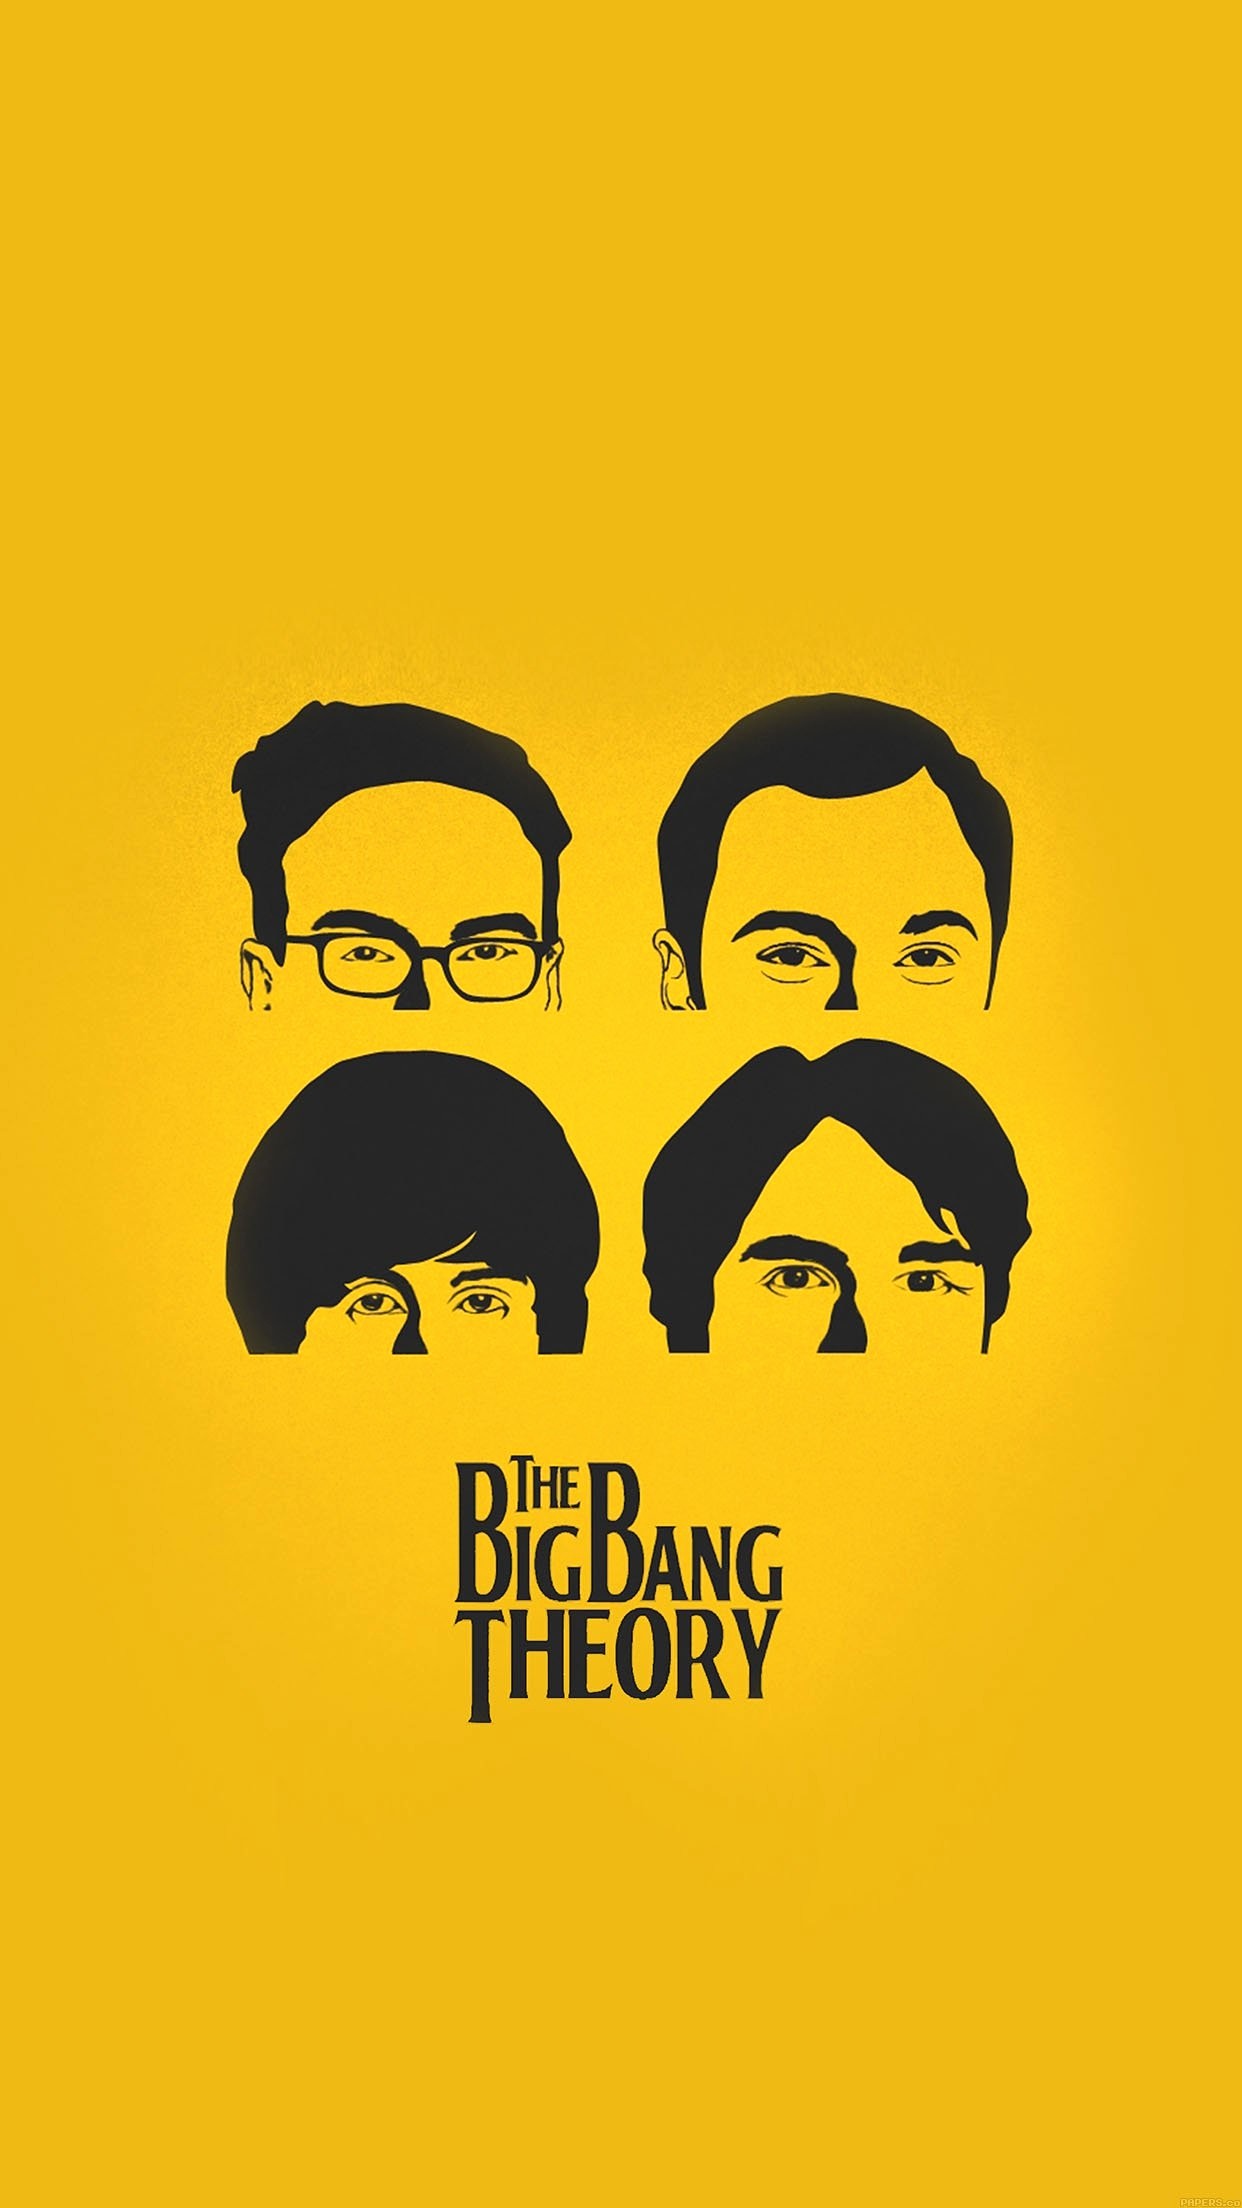 Big Bang Theory Beatles , HD Wallpaper & Backgrounds